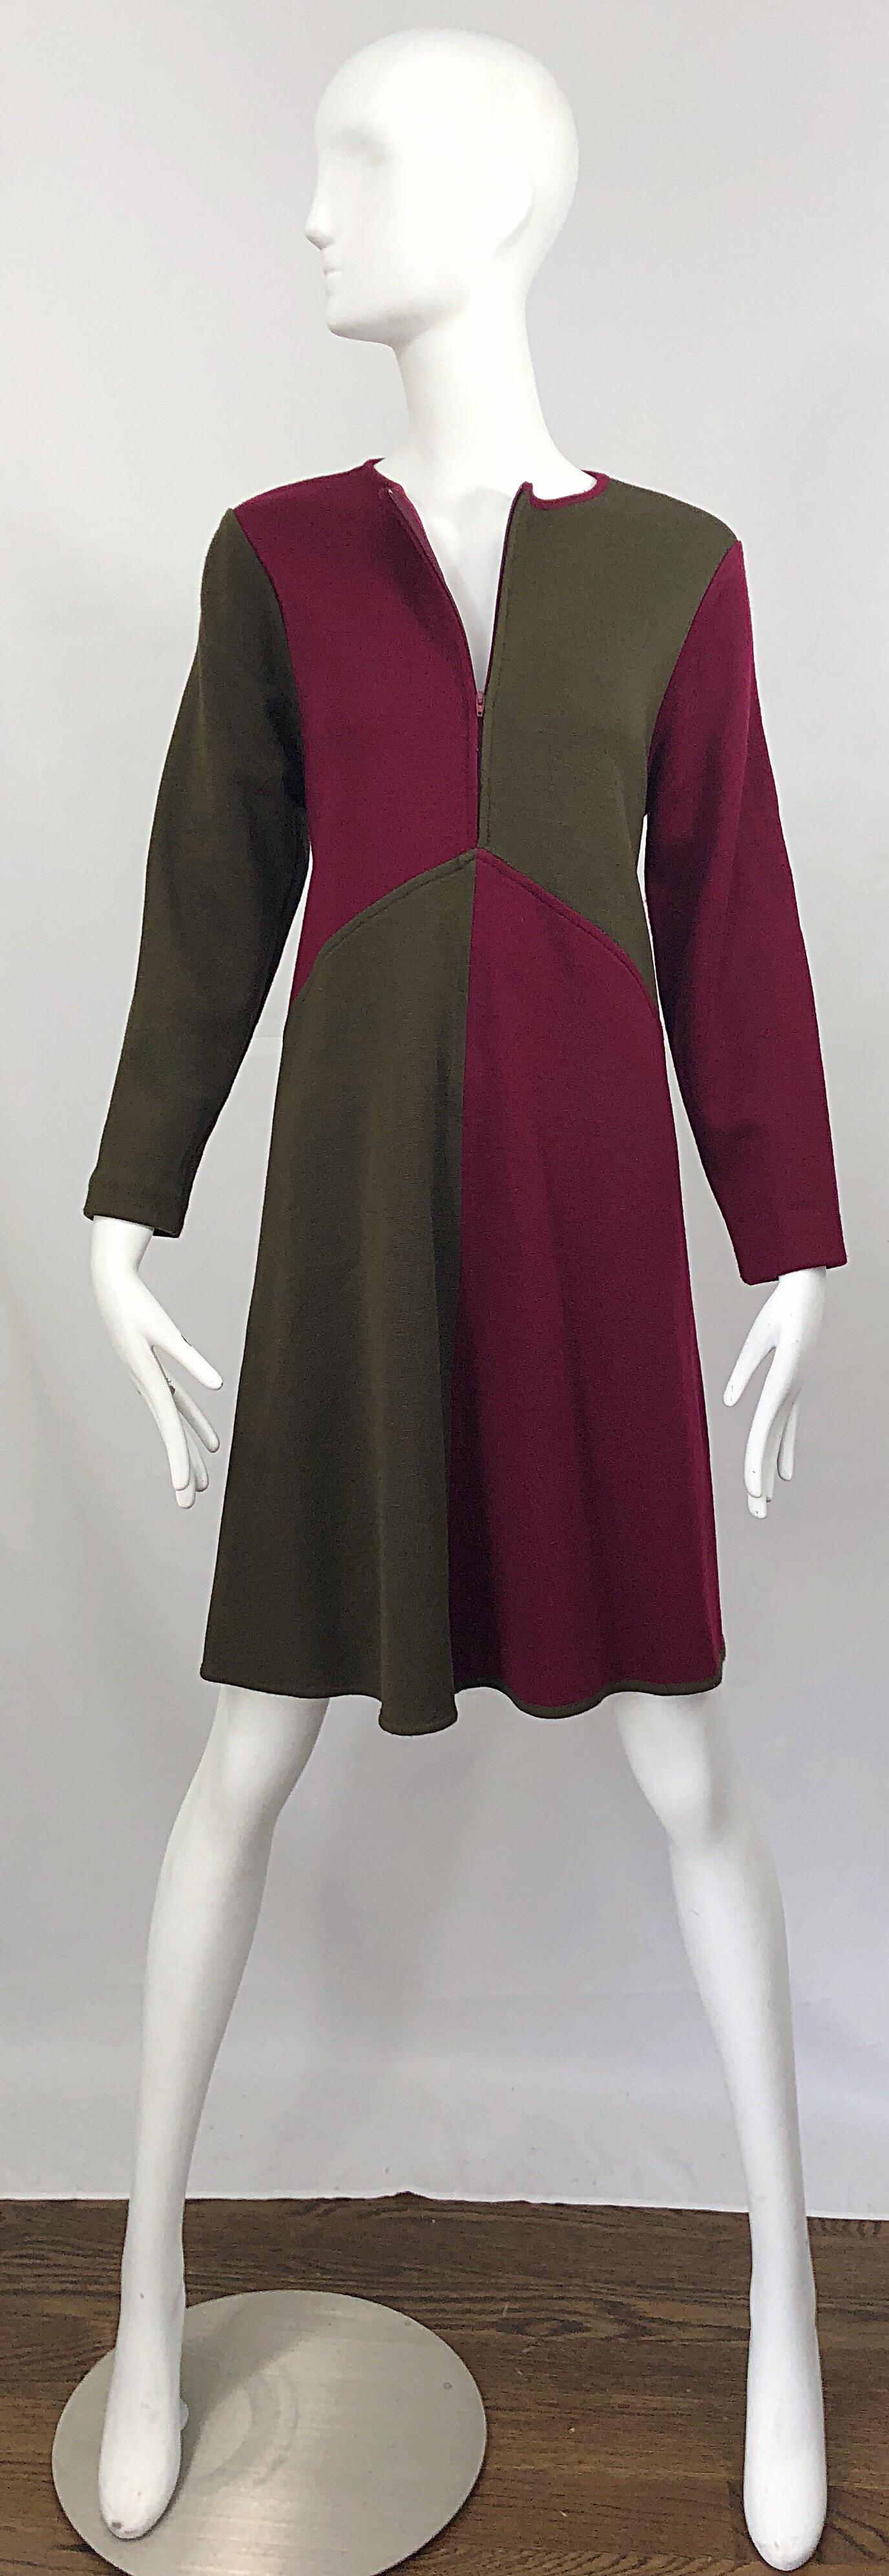 Vintage Harve Benard 1960s Style Maroon Burgundy + Brown Knit Wool Swing Dress For Sale 3